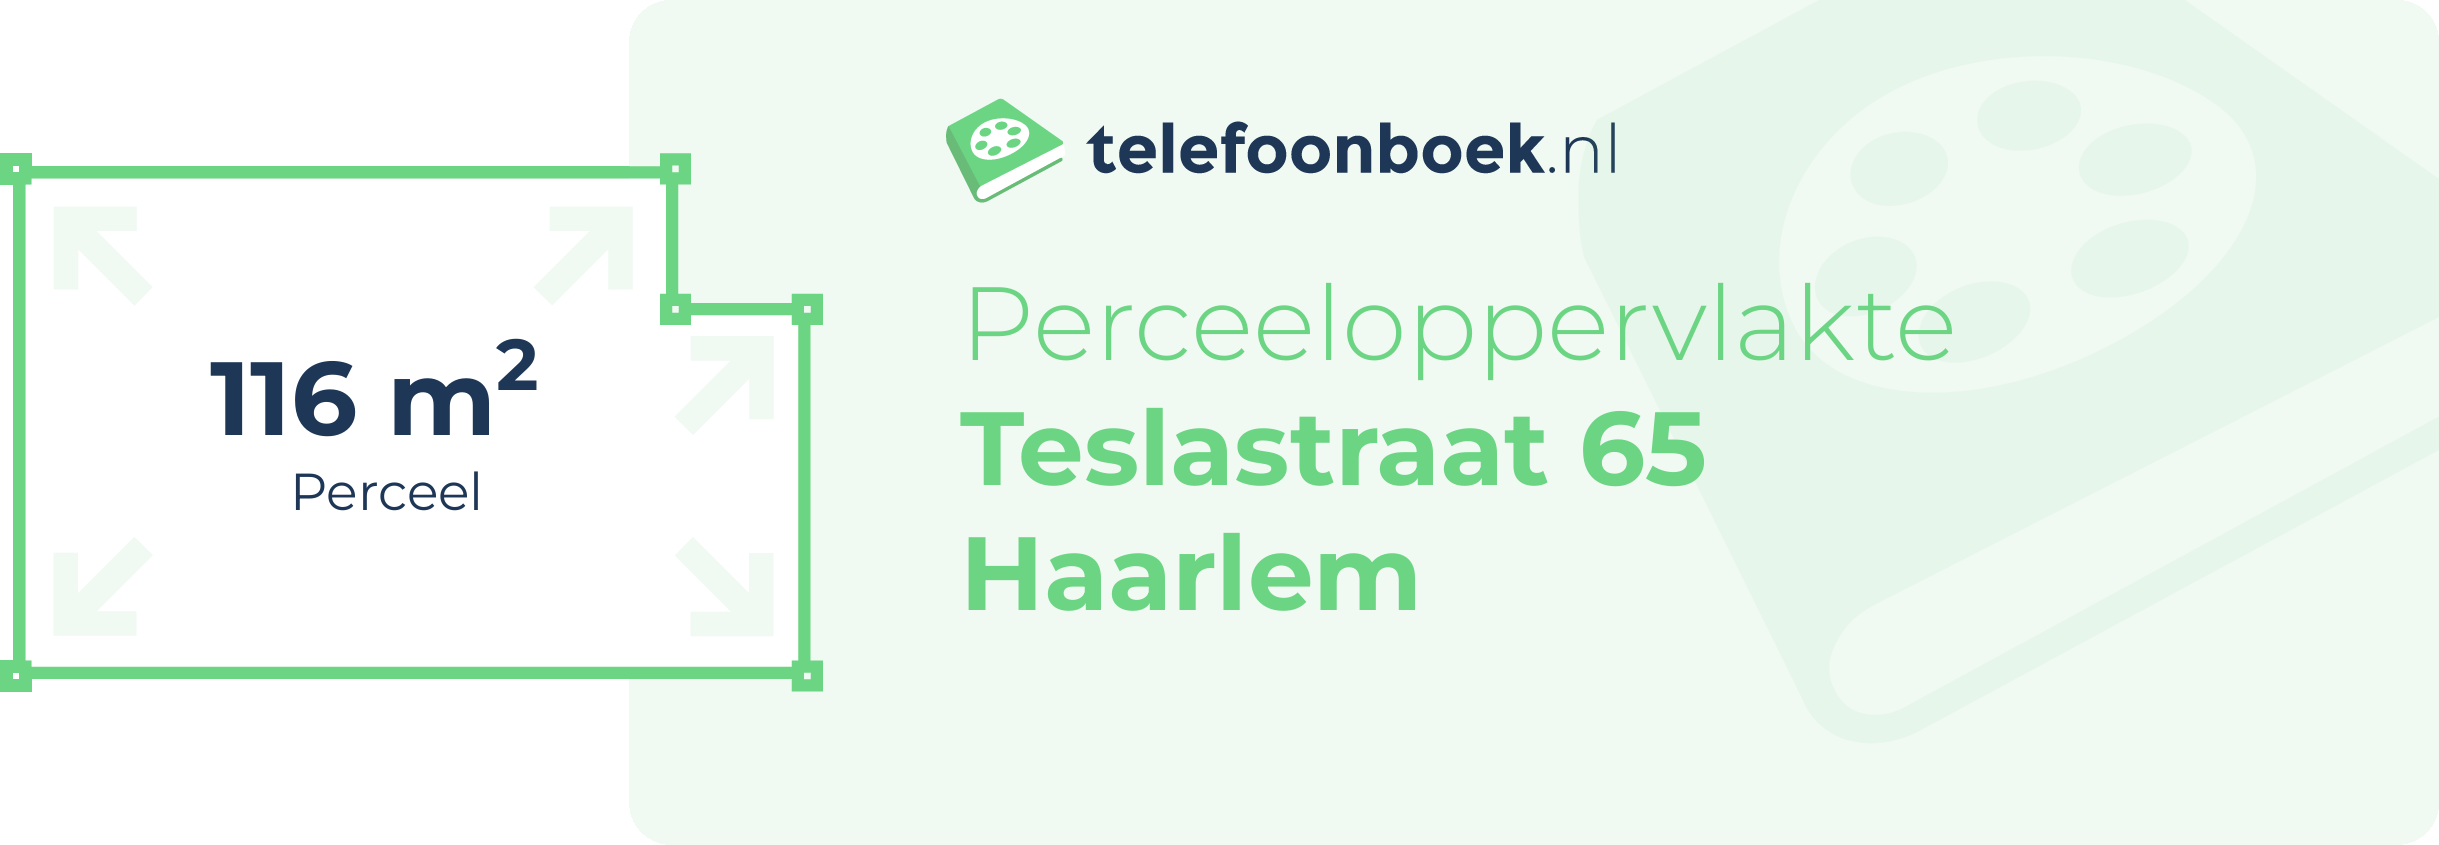 Perceeloppervlakte Teslastraat 65 Haarlem